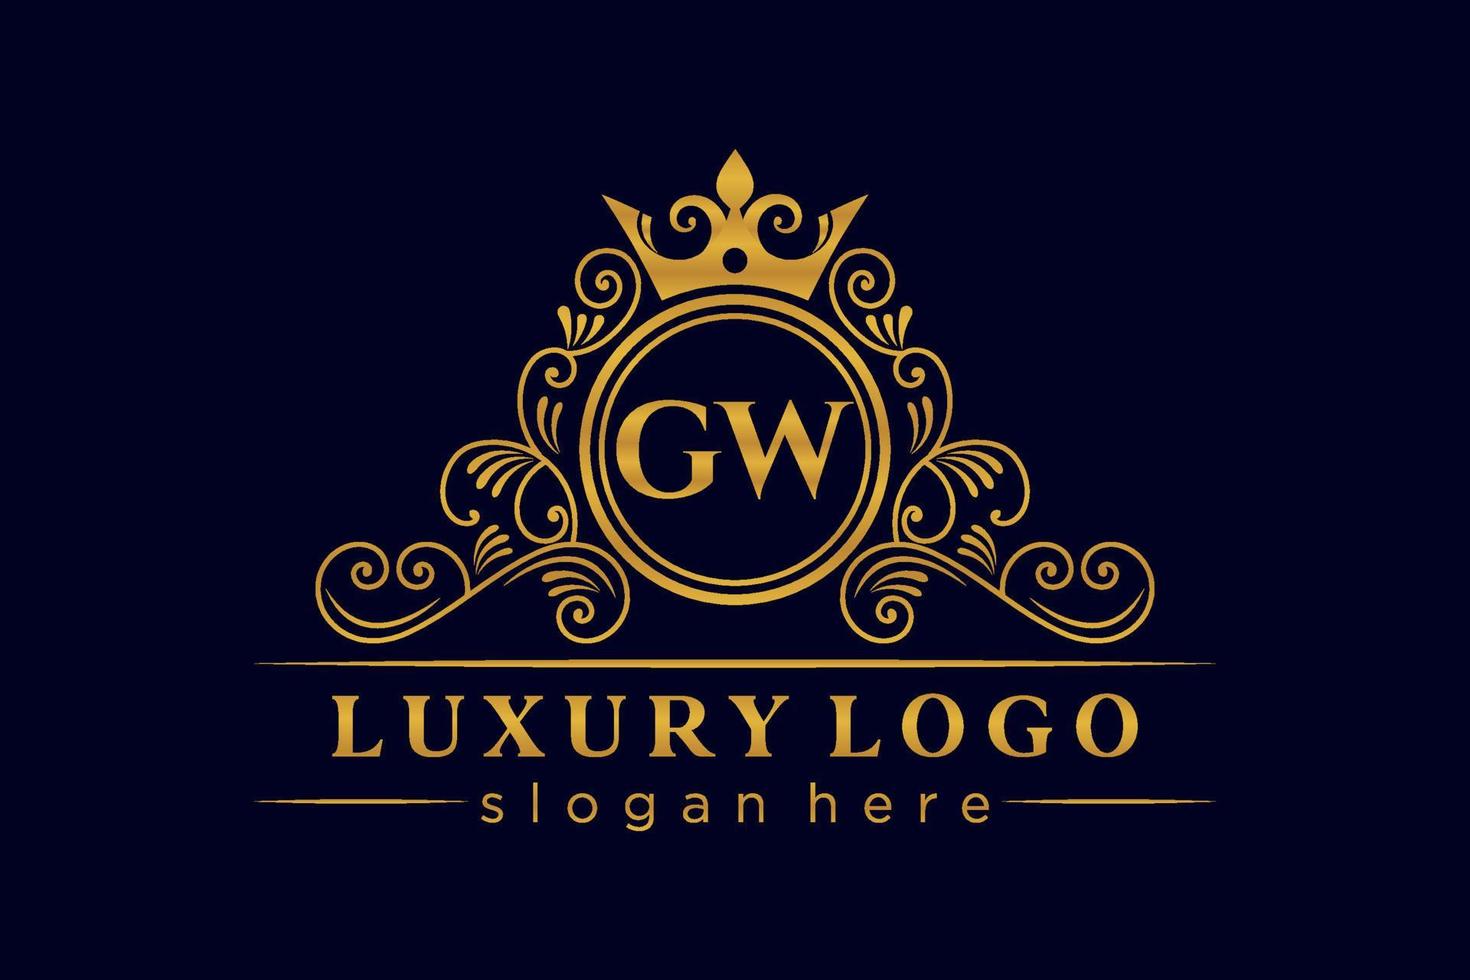 GW Initial Letter Gold calligraphic feminine floral hand drawn heraldic monogram antique vintage style luxury logo design Premium Vector